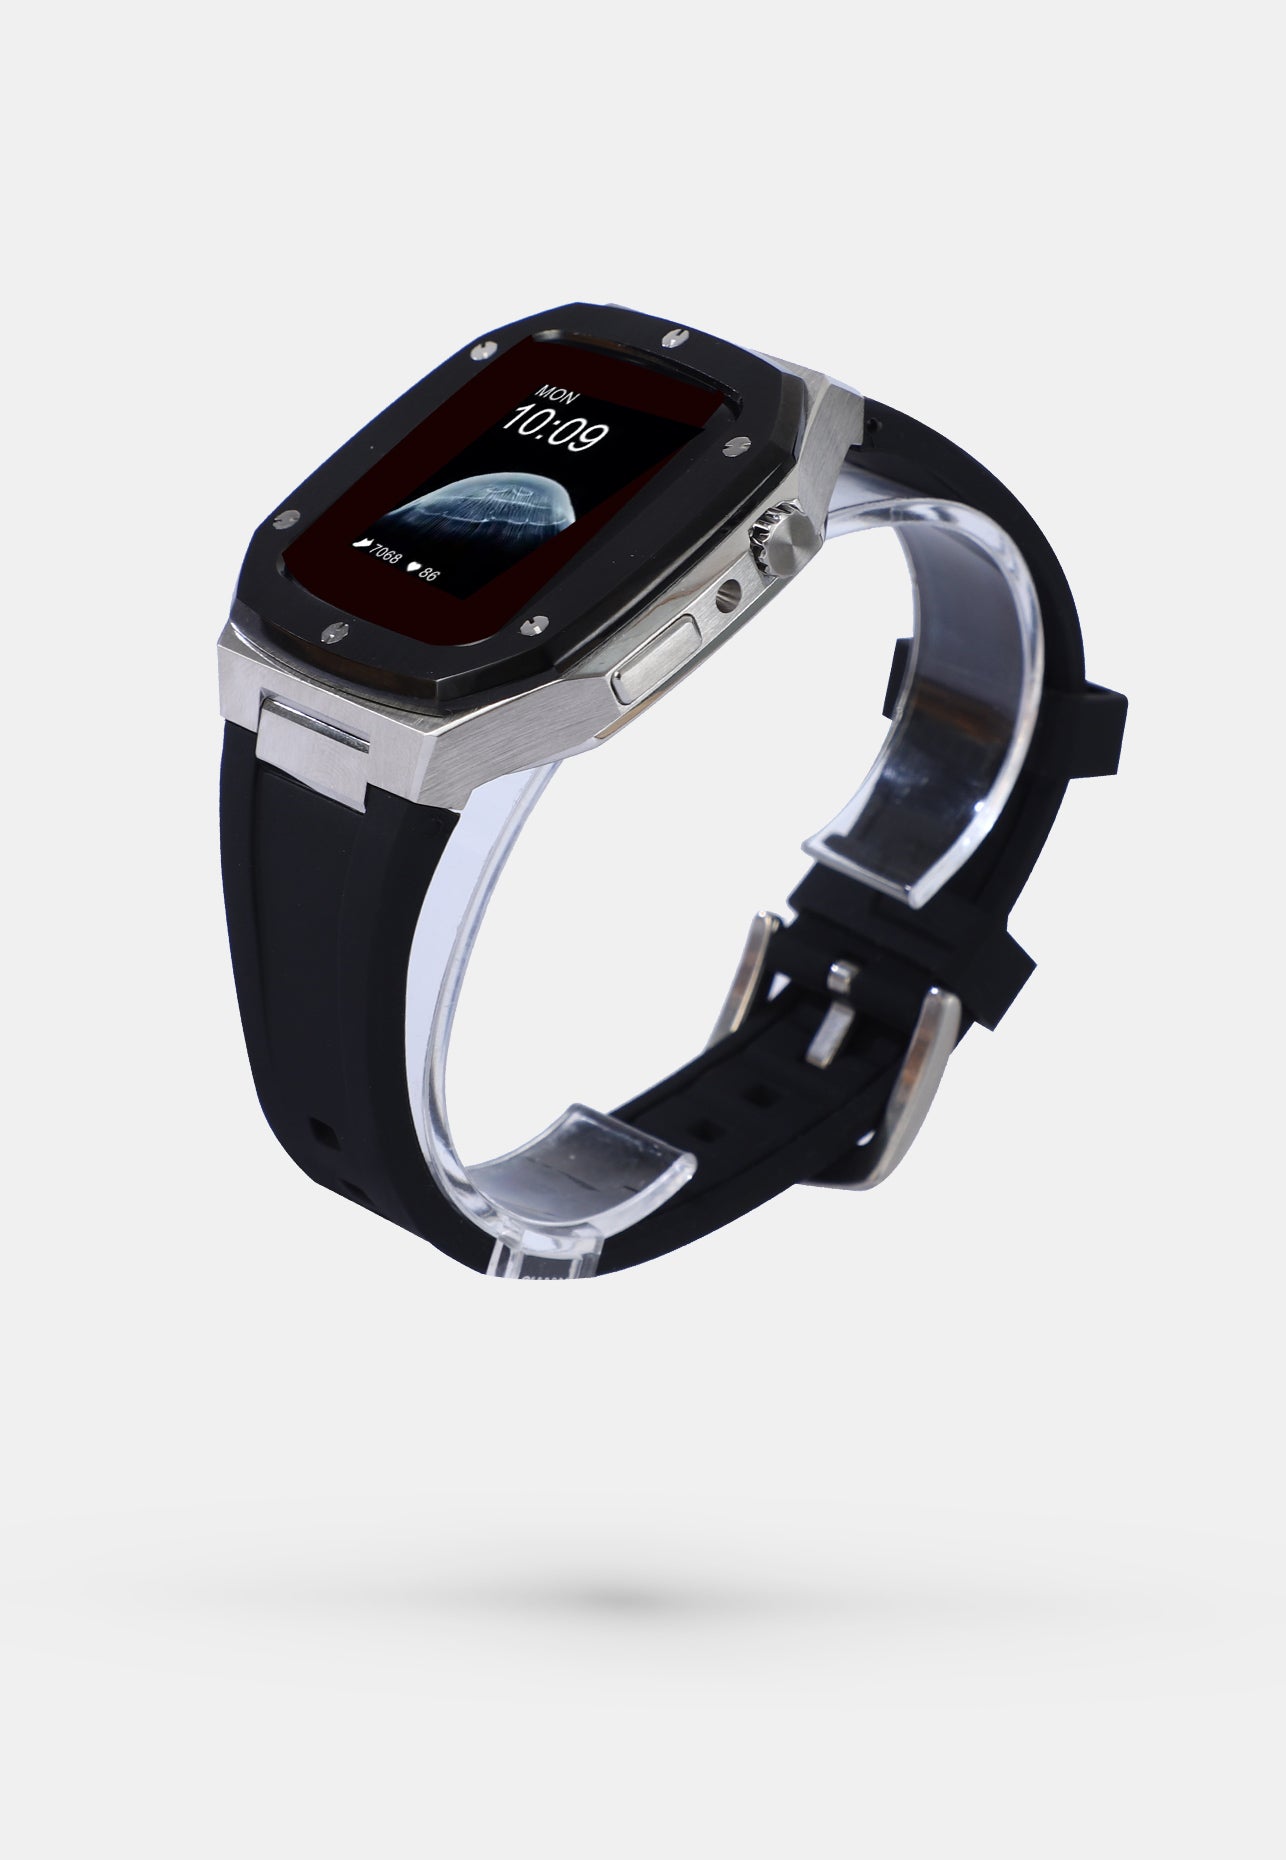 Offshore Black - Accessoire Apple Watch - Coque Etui Boitier Noir avec lunette de la Montre en Argent Bracelet Noir Appel Watch  4, 5, 6 et SE 44mm cote